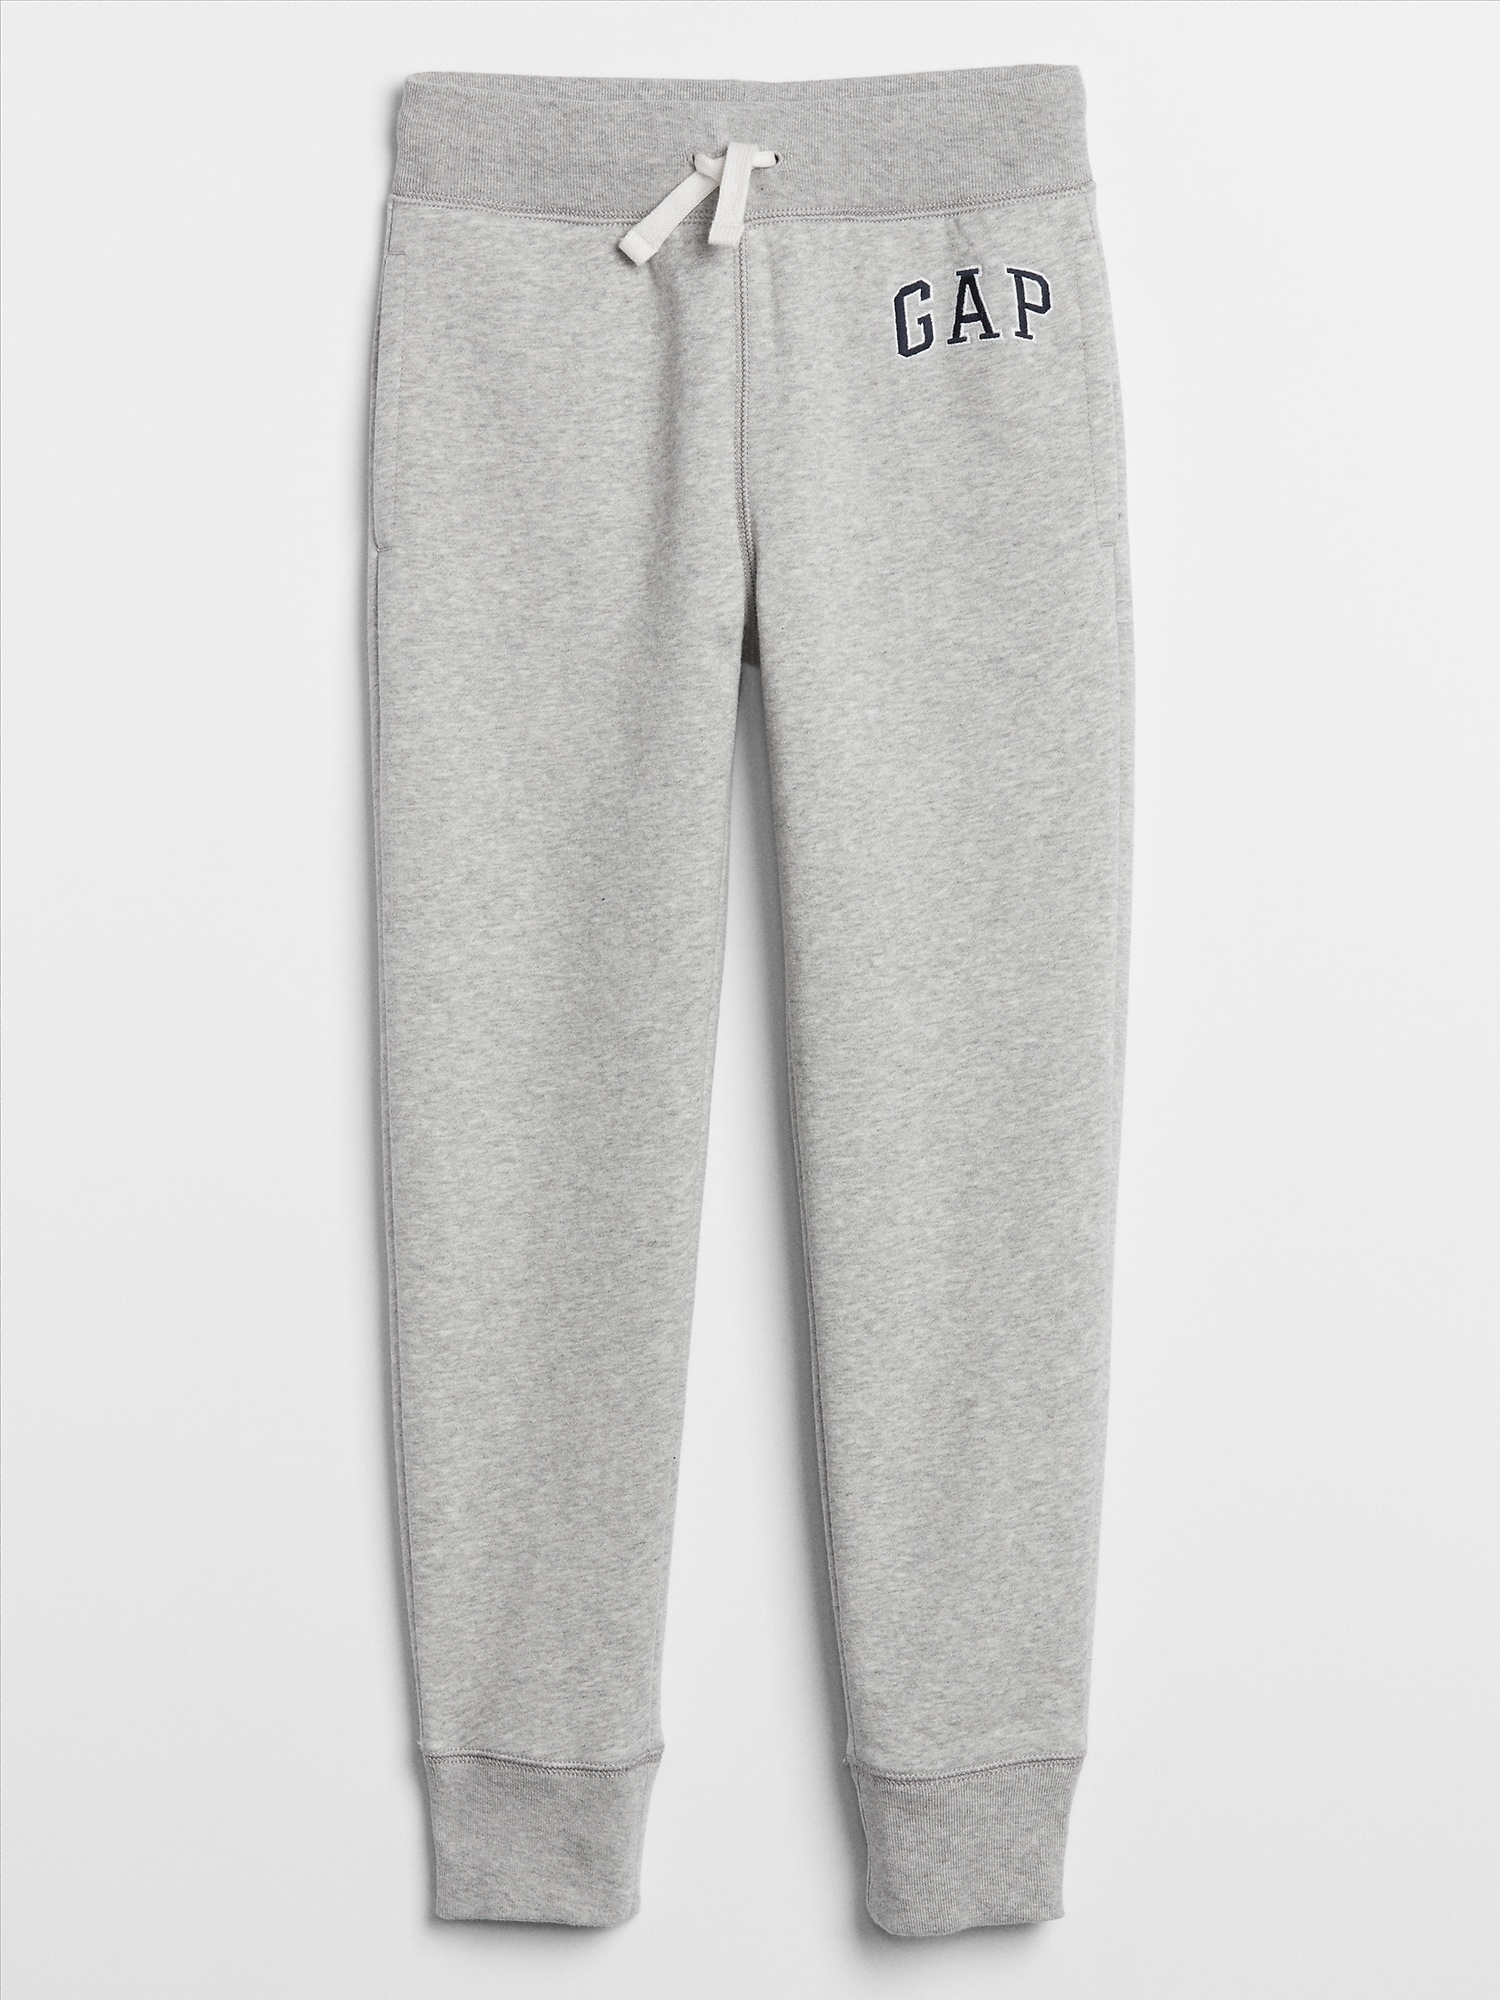 gap pants kids